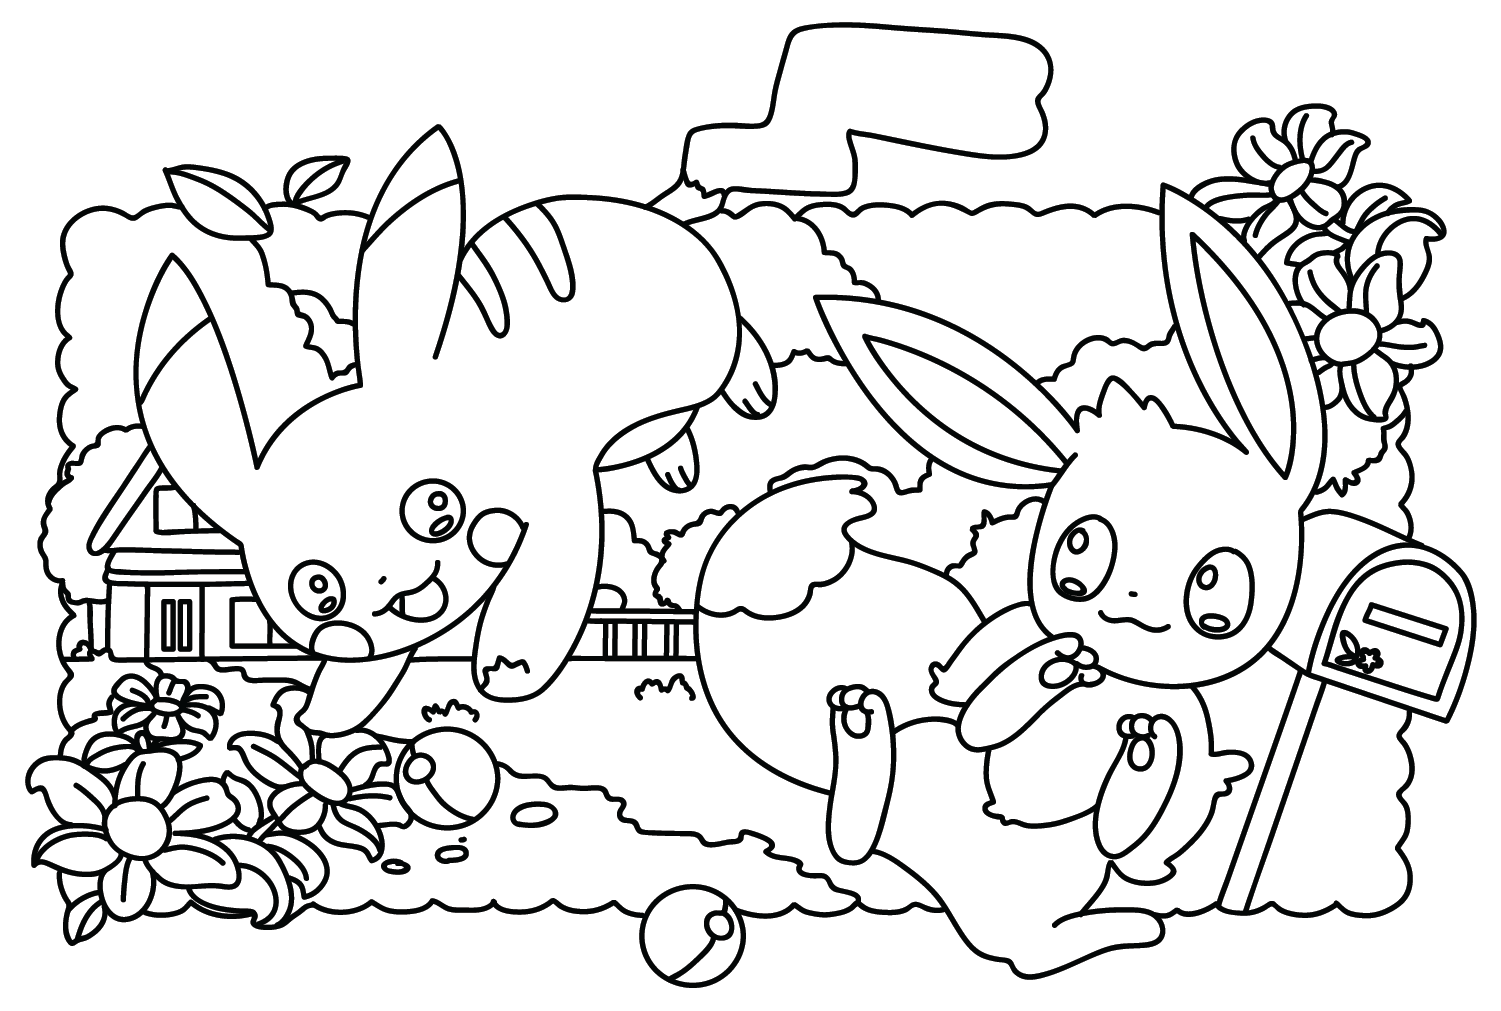 Eevee y Pikachu Pokemon Coloring Page Eevee Coloring Pages Páginas